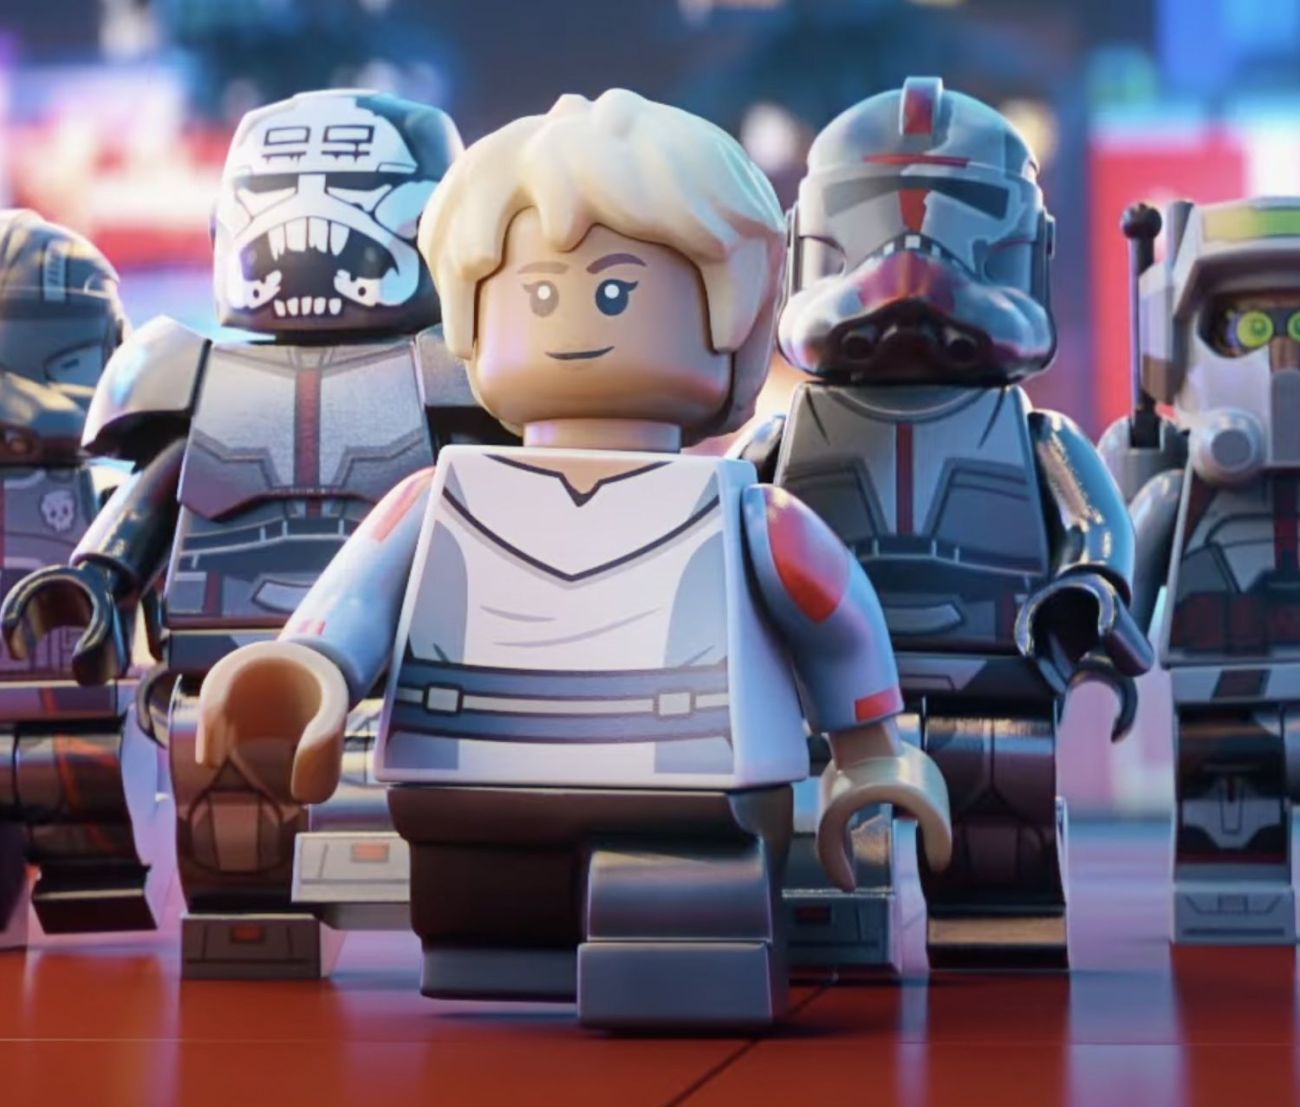 LEGO Star Wars Omega Bad Batch Minifigur